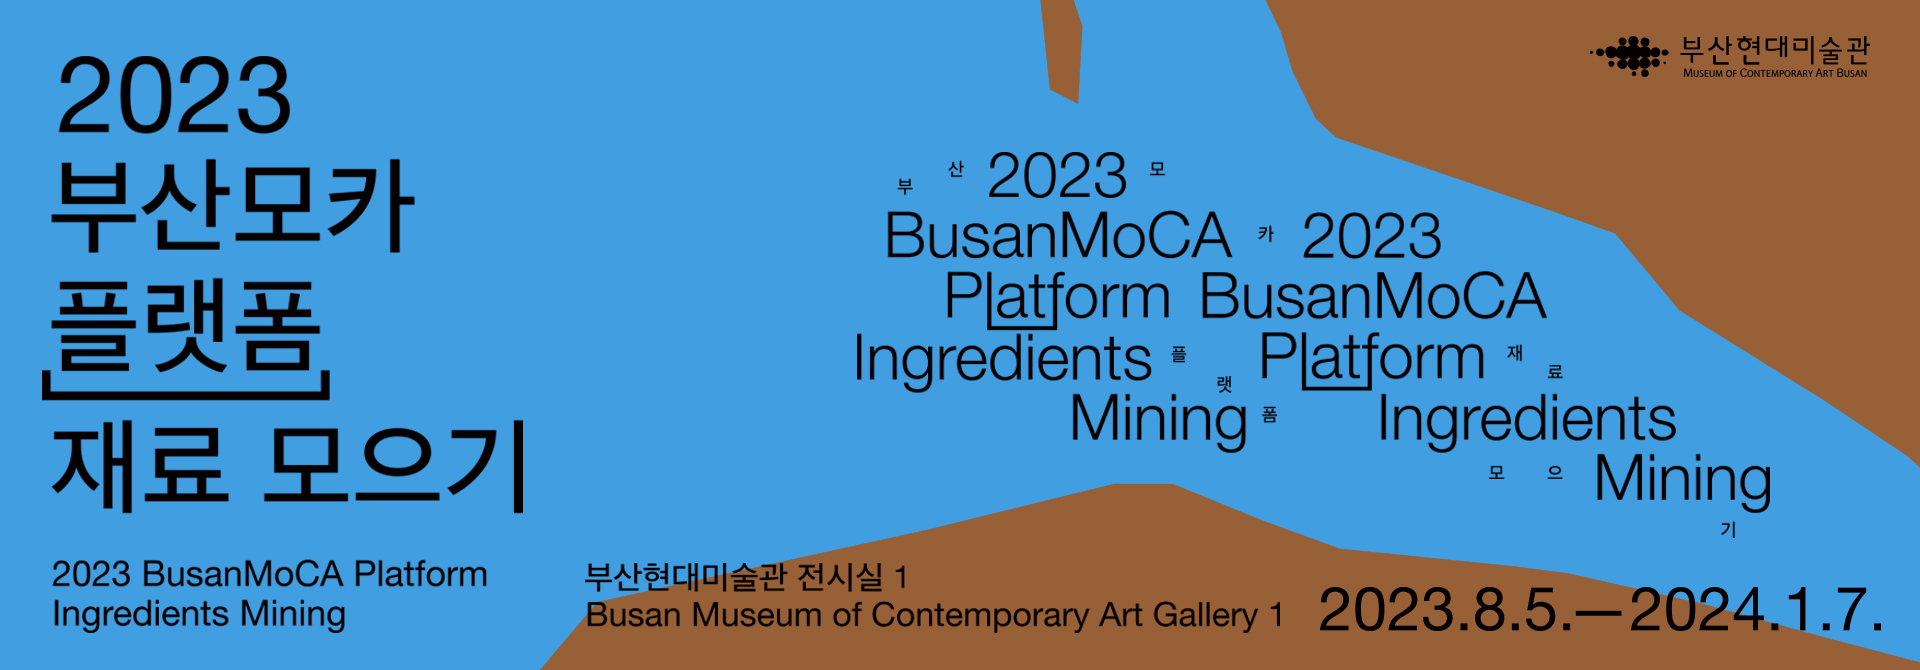 부산현대미술관
Museum of Contemporary Art Busan
2023
부산모카 플랫폼 재료모으기 


2023 BusanMoCA Platform
Ingredients Mining 

부산현대미술관 전시실1
Busan Museum of Contemporary Art Gallery 1 

2023.8.5 - 2024.1.7